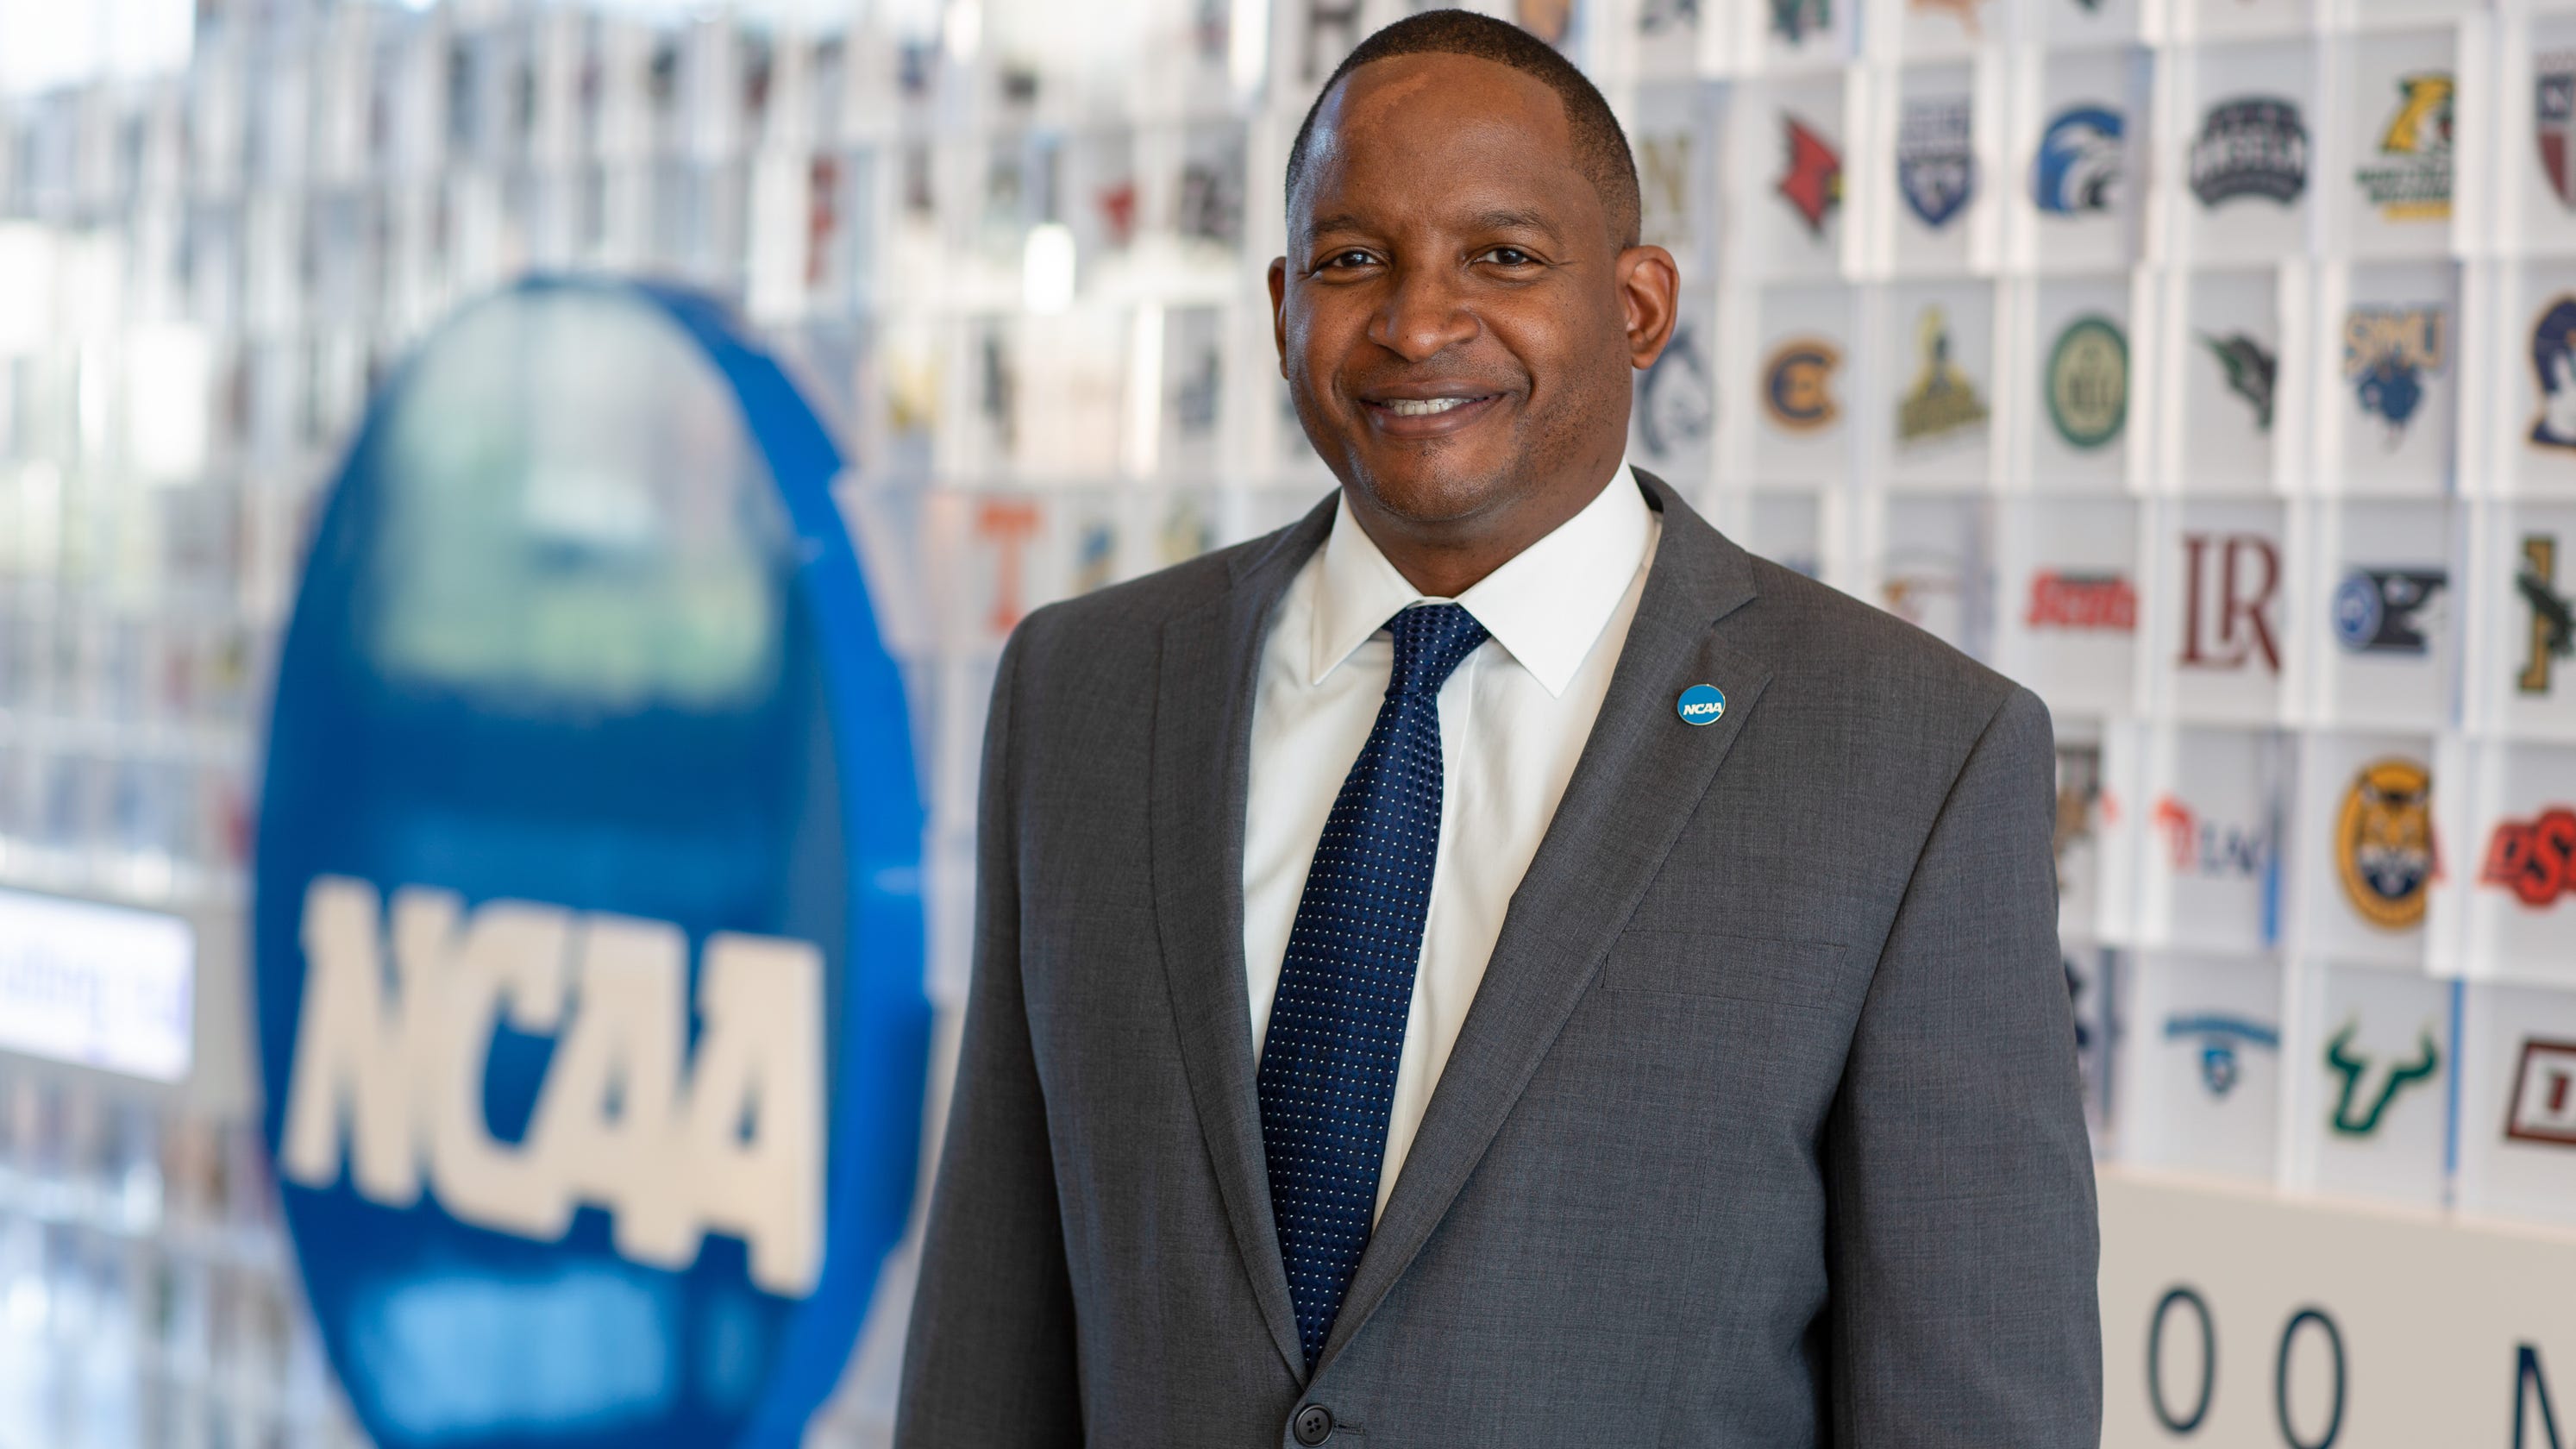 From Vanderbilt football to NCAA senior VP on diversity